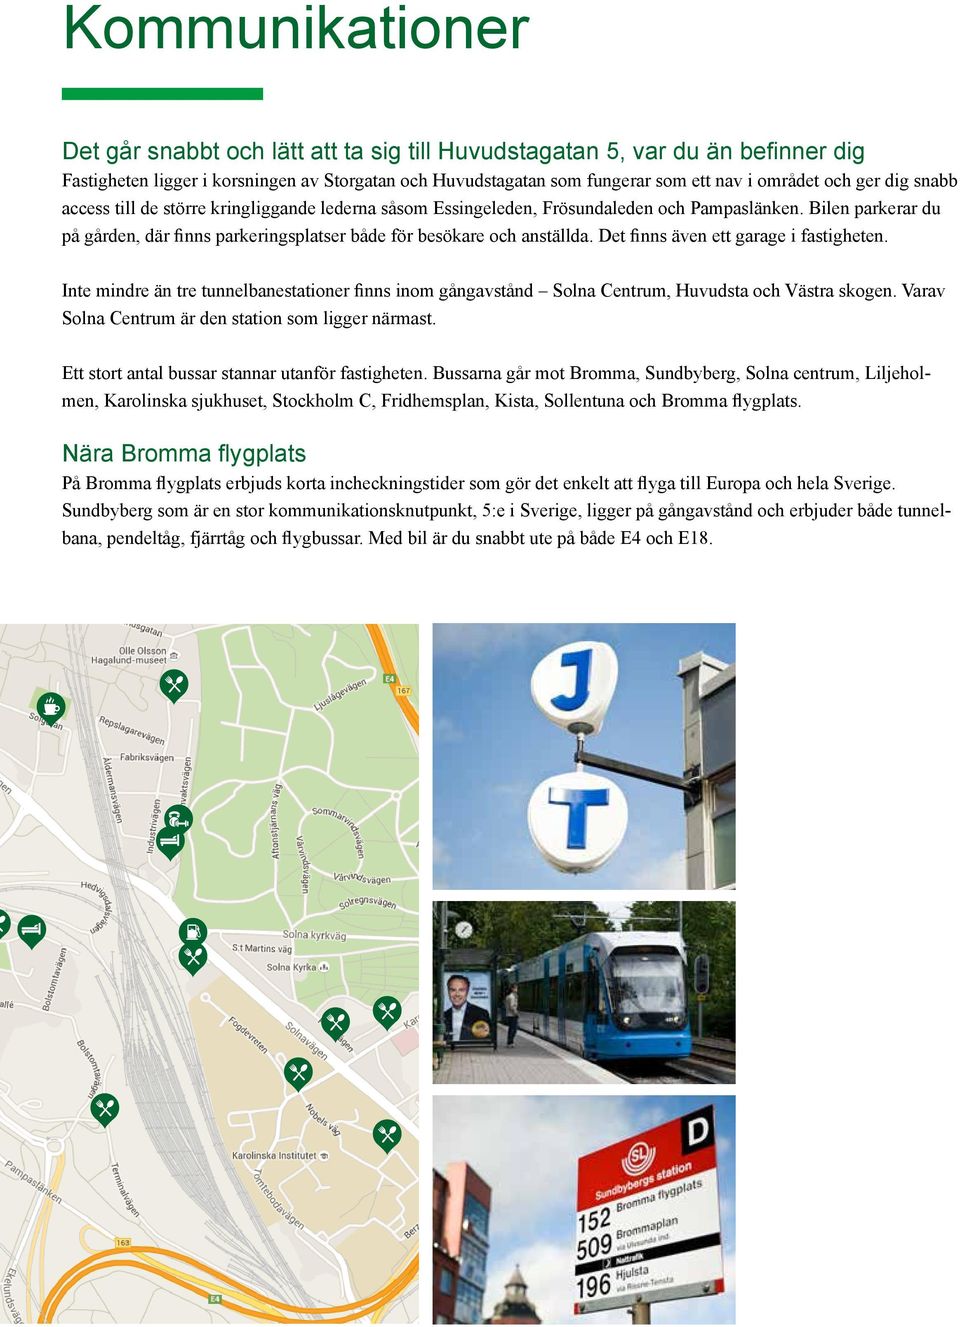 Det finns även ett garage i fastigheten. Inte mindre än tre tunnelbanestationer finns inom gångavstånd Solna Centrum, Huvudsta och Västra skogen. Varav Solna Centrum är den station som ligger närmast.